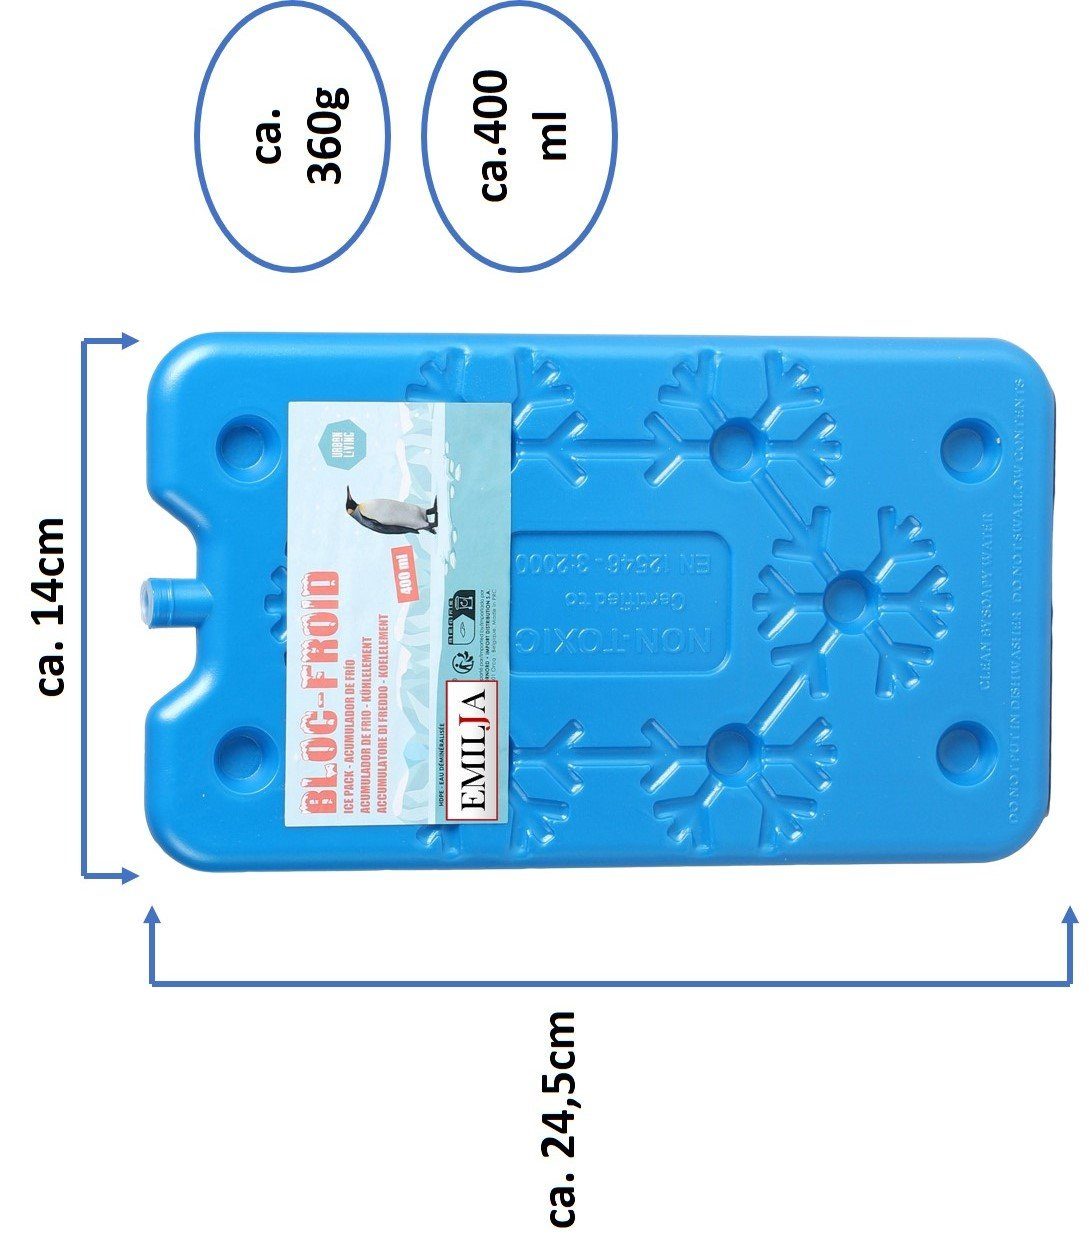 Frio-Kühltasche klein 14 x 15 cm blau